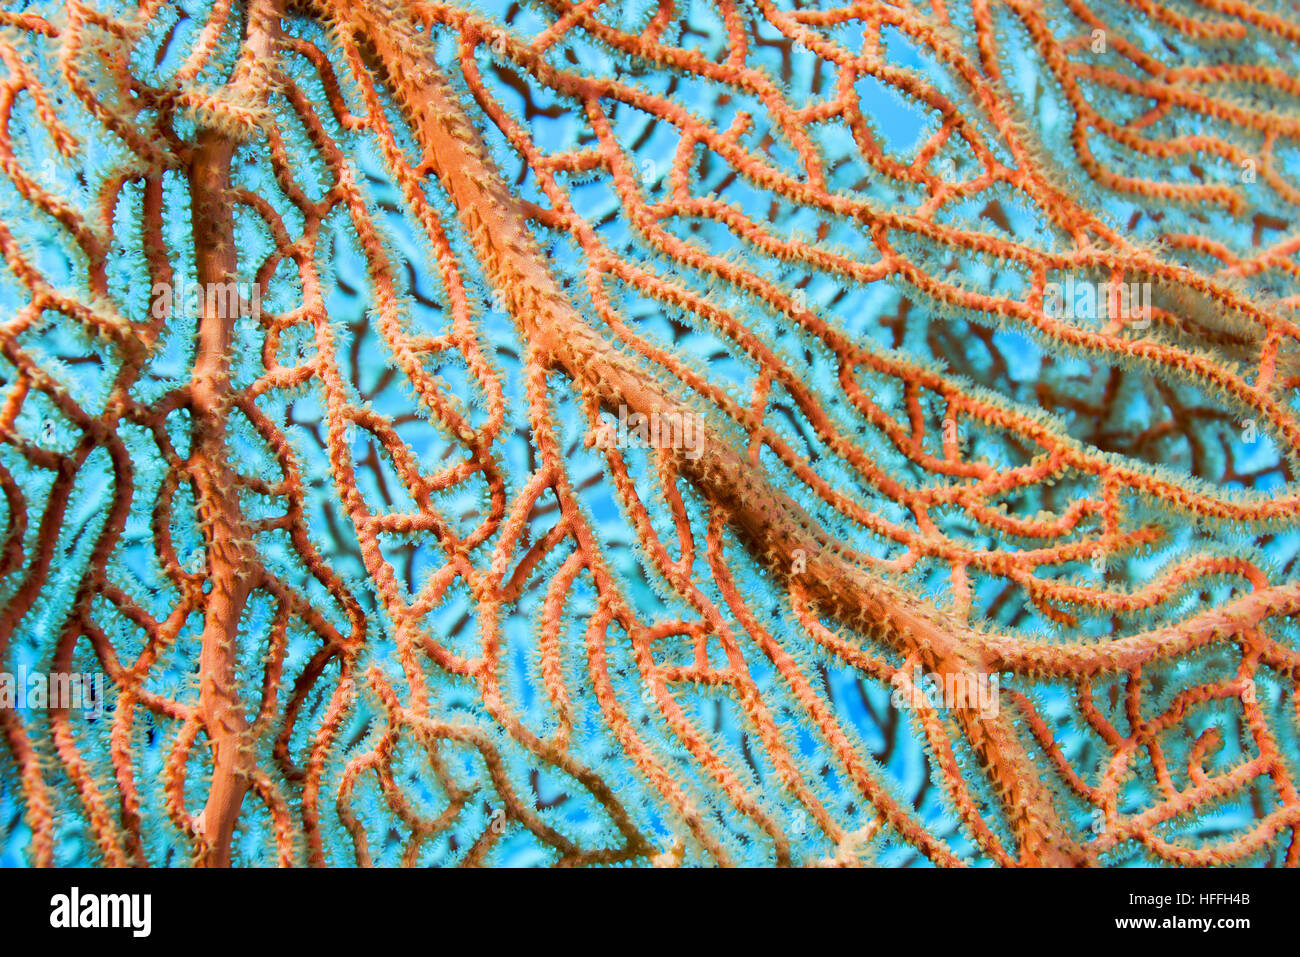 Close-up - soft coral giganti di mare o di ventola di gorgonie fan corallo (Subergorgia mollis) Mare Rosso, Sharm El Sheikh, Sinai, Egitto Foto Stock